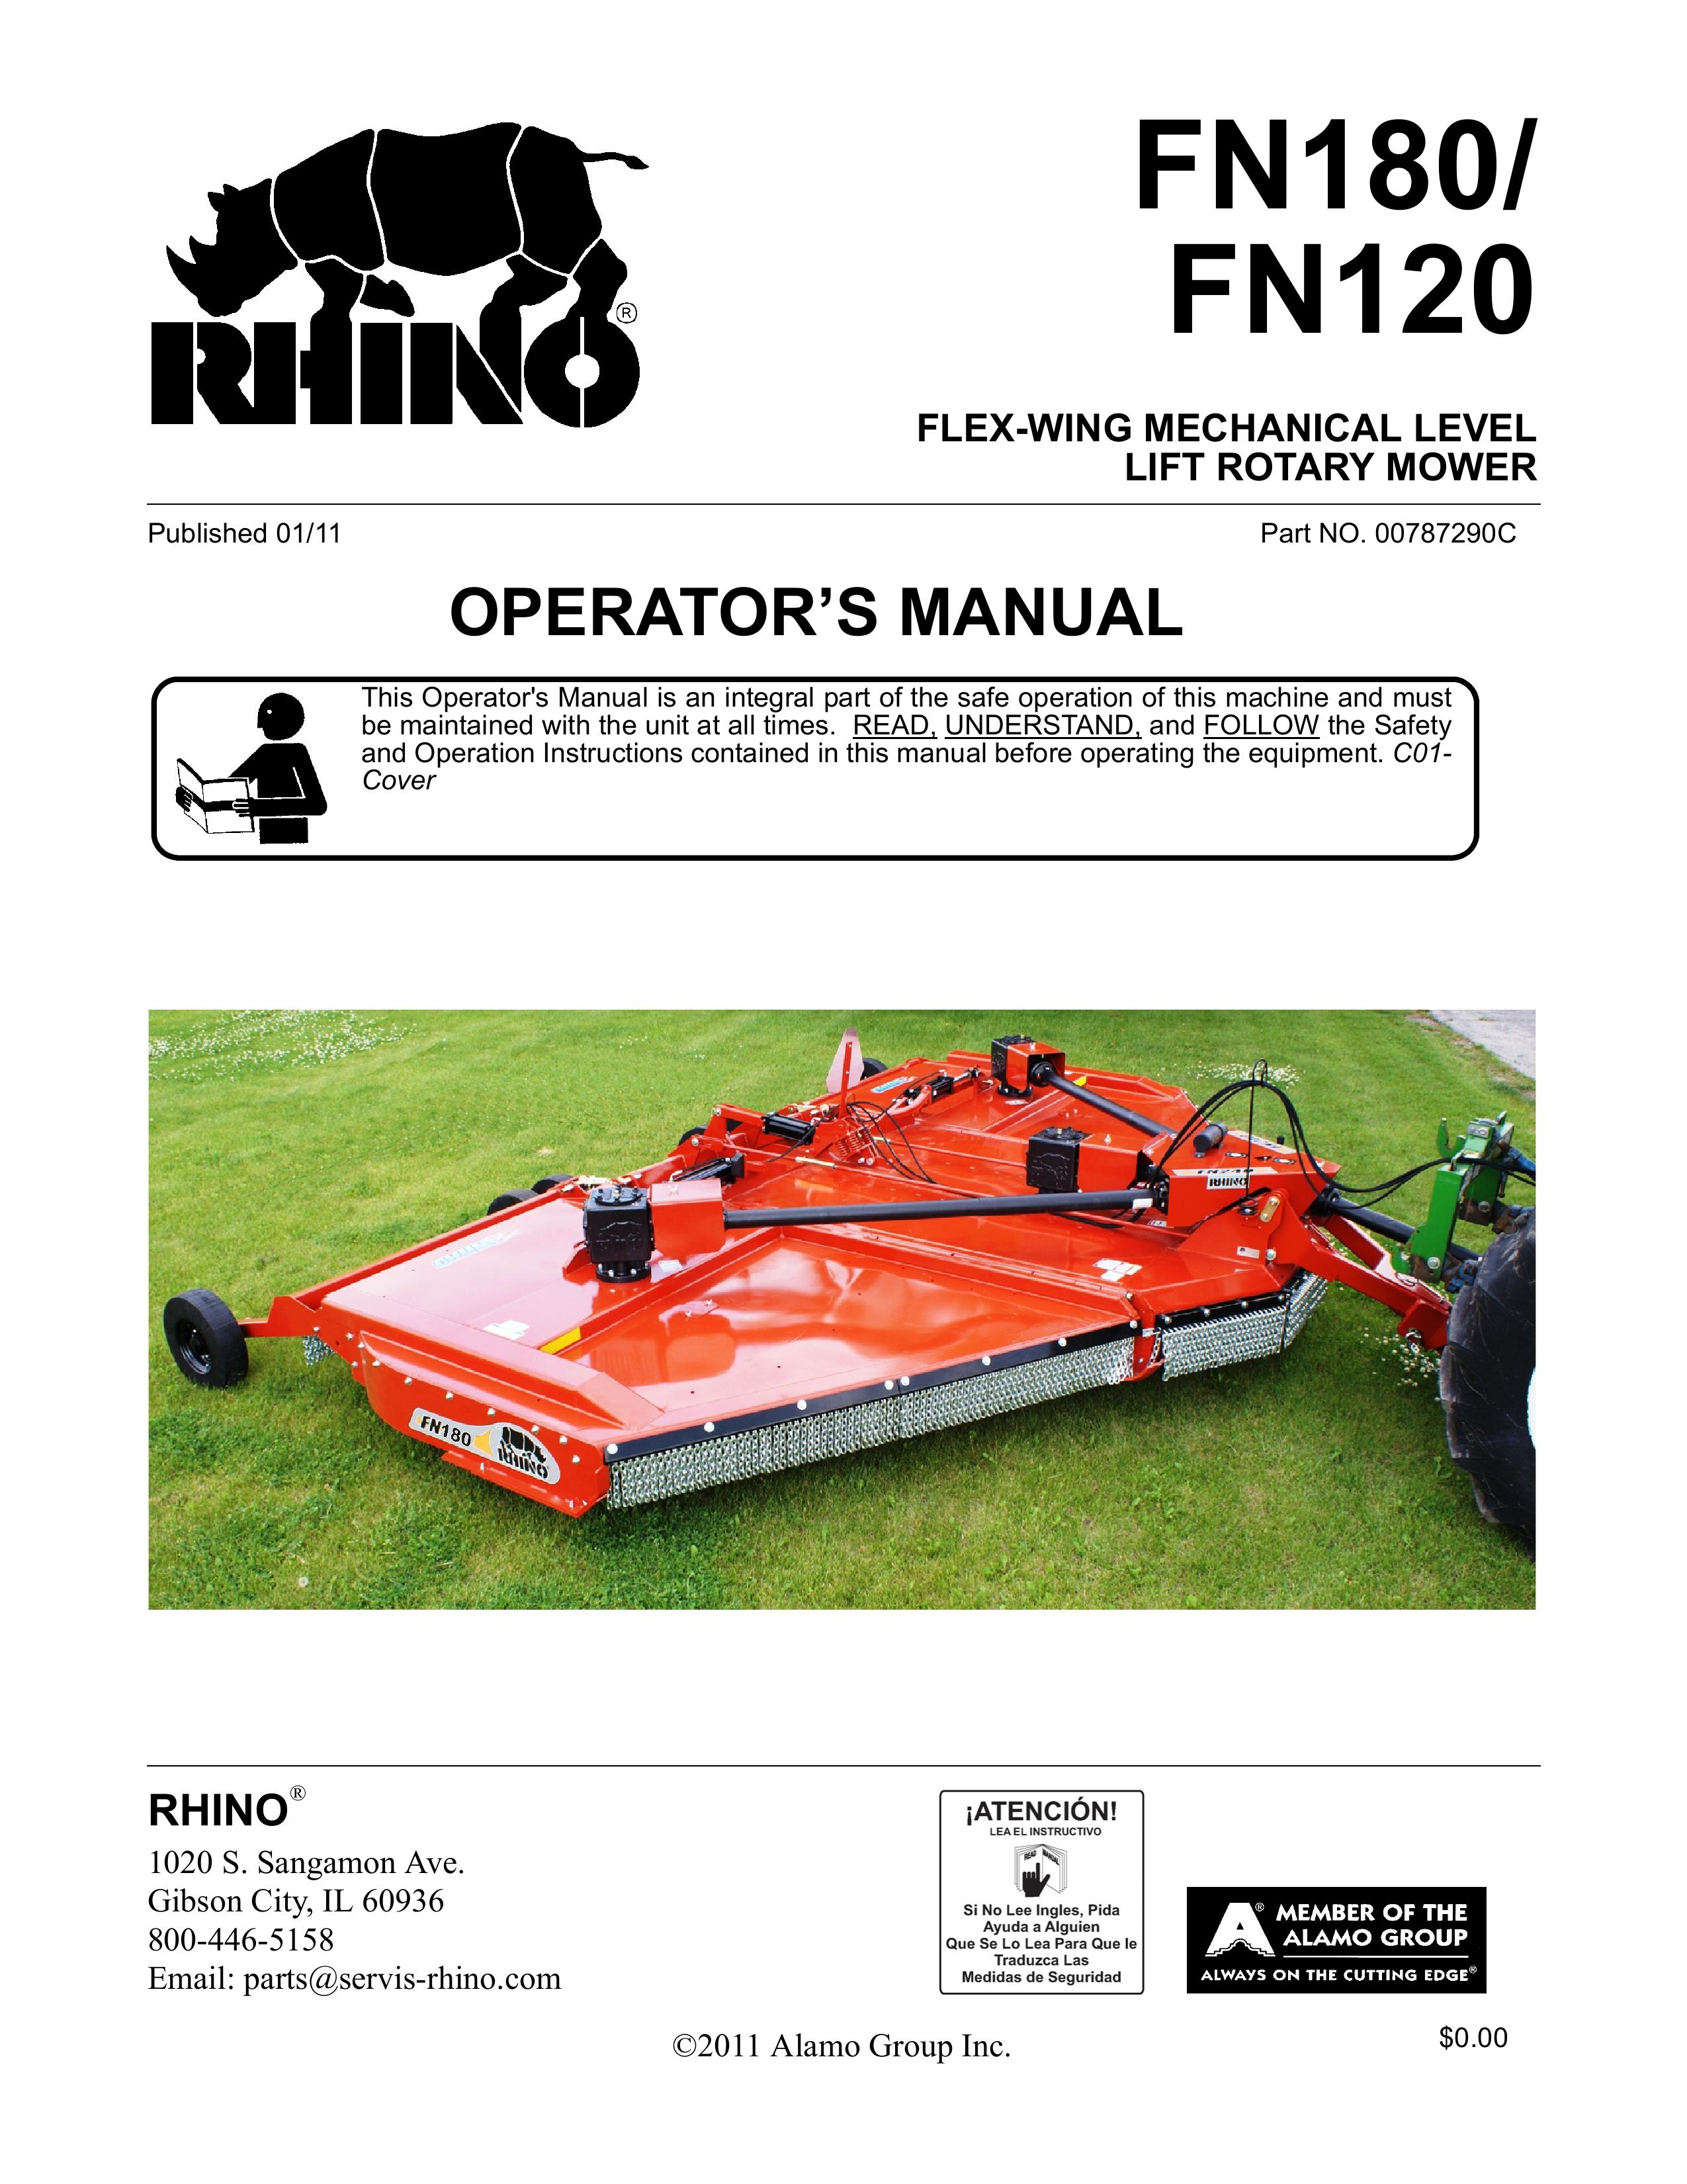 Rhino Mounts FN120 Lawn Mower User Manual